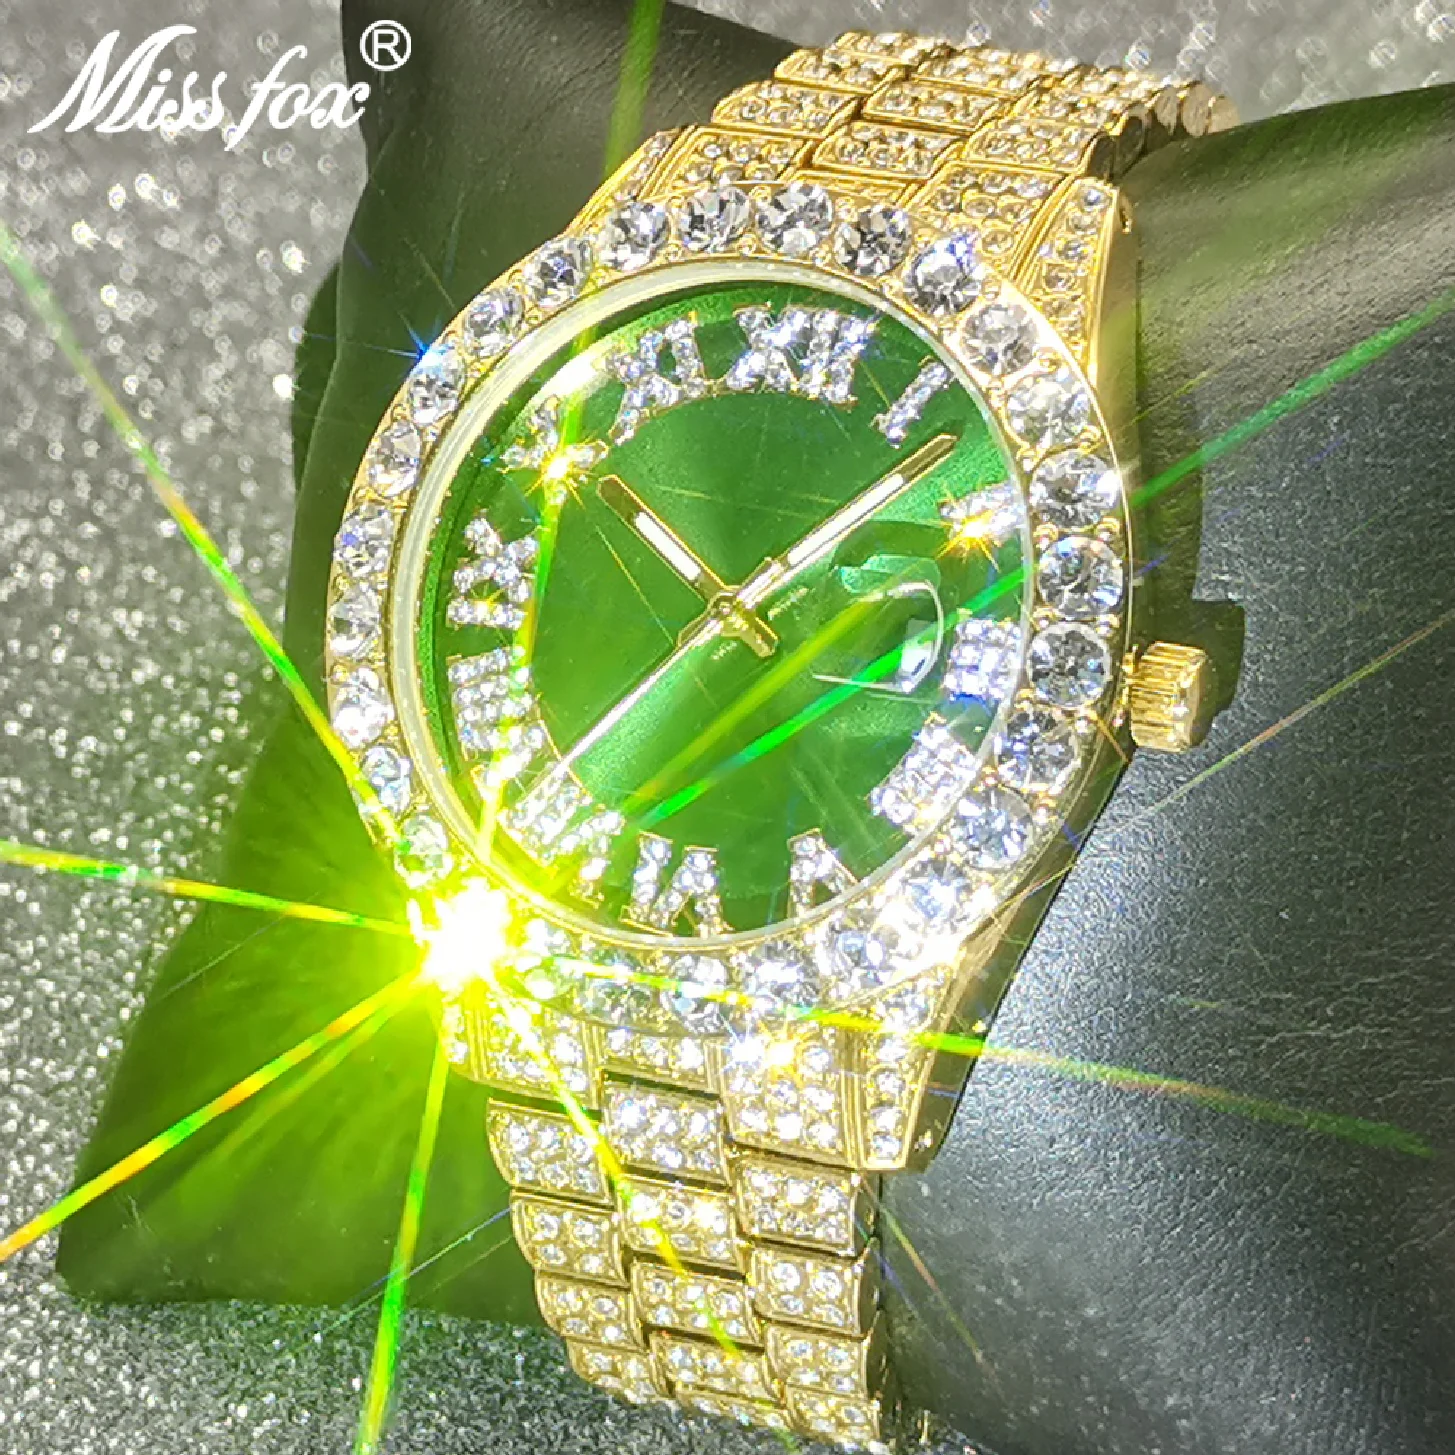 Montre Homme Luxe Новые Кварцевые Часы С Полным Муассанитовым Зеленым Циферблатом Со Льдом, Топовый Дизайн бренда в стиле Хип-Хоп, Водонепроницаемые Наручные Часы Для Деловых Погружений